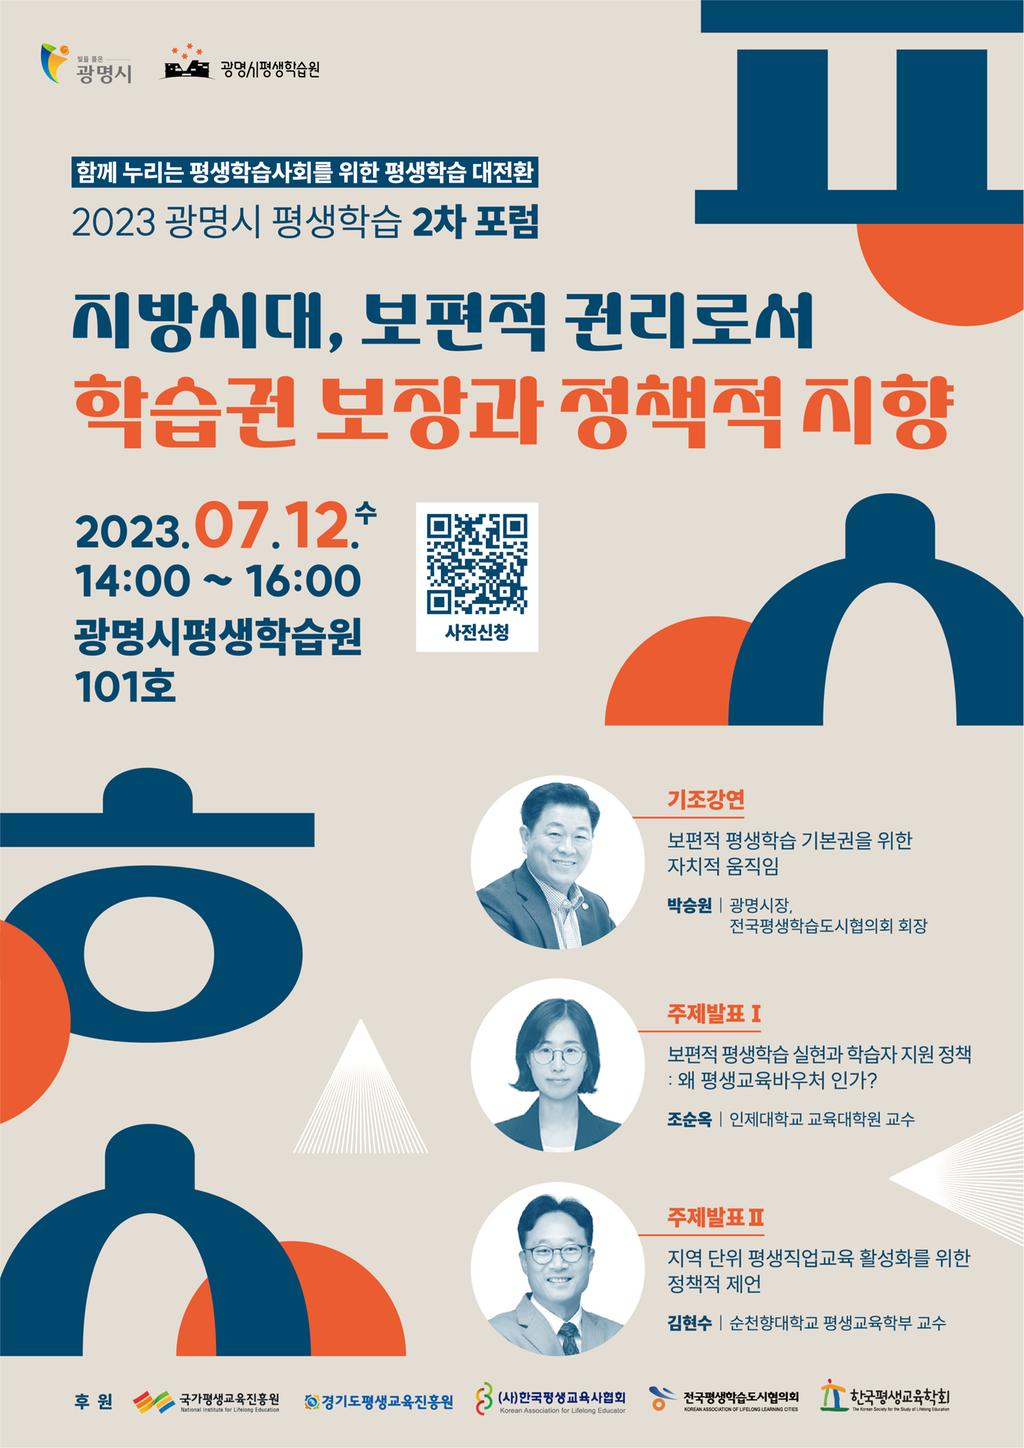  「2023 광명시 평생학습 2차 포럼」개최 안내  